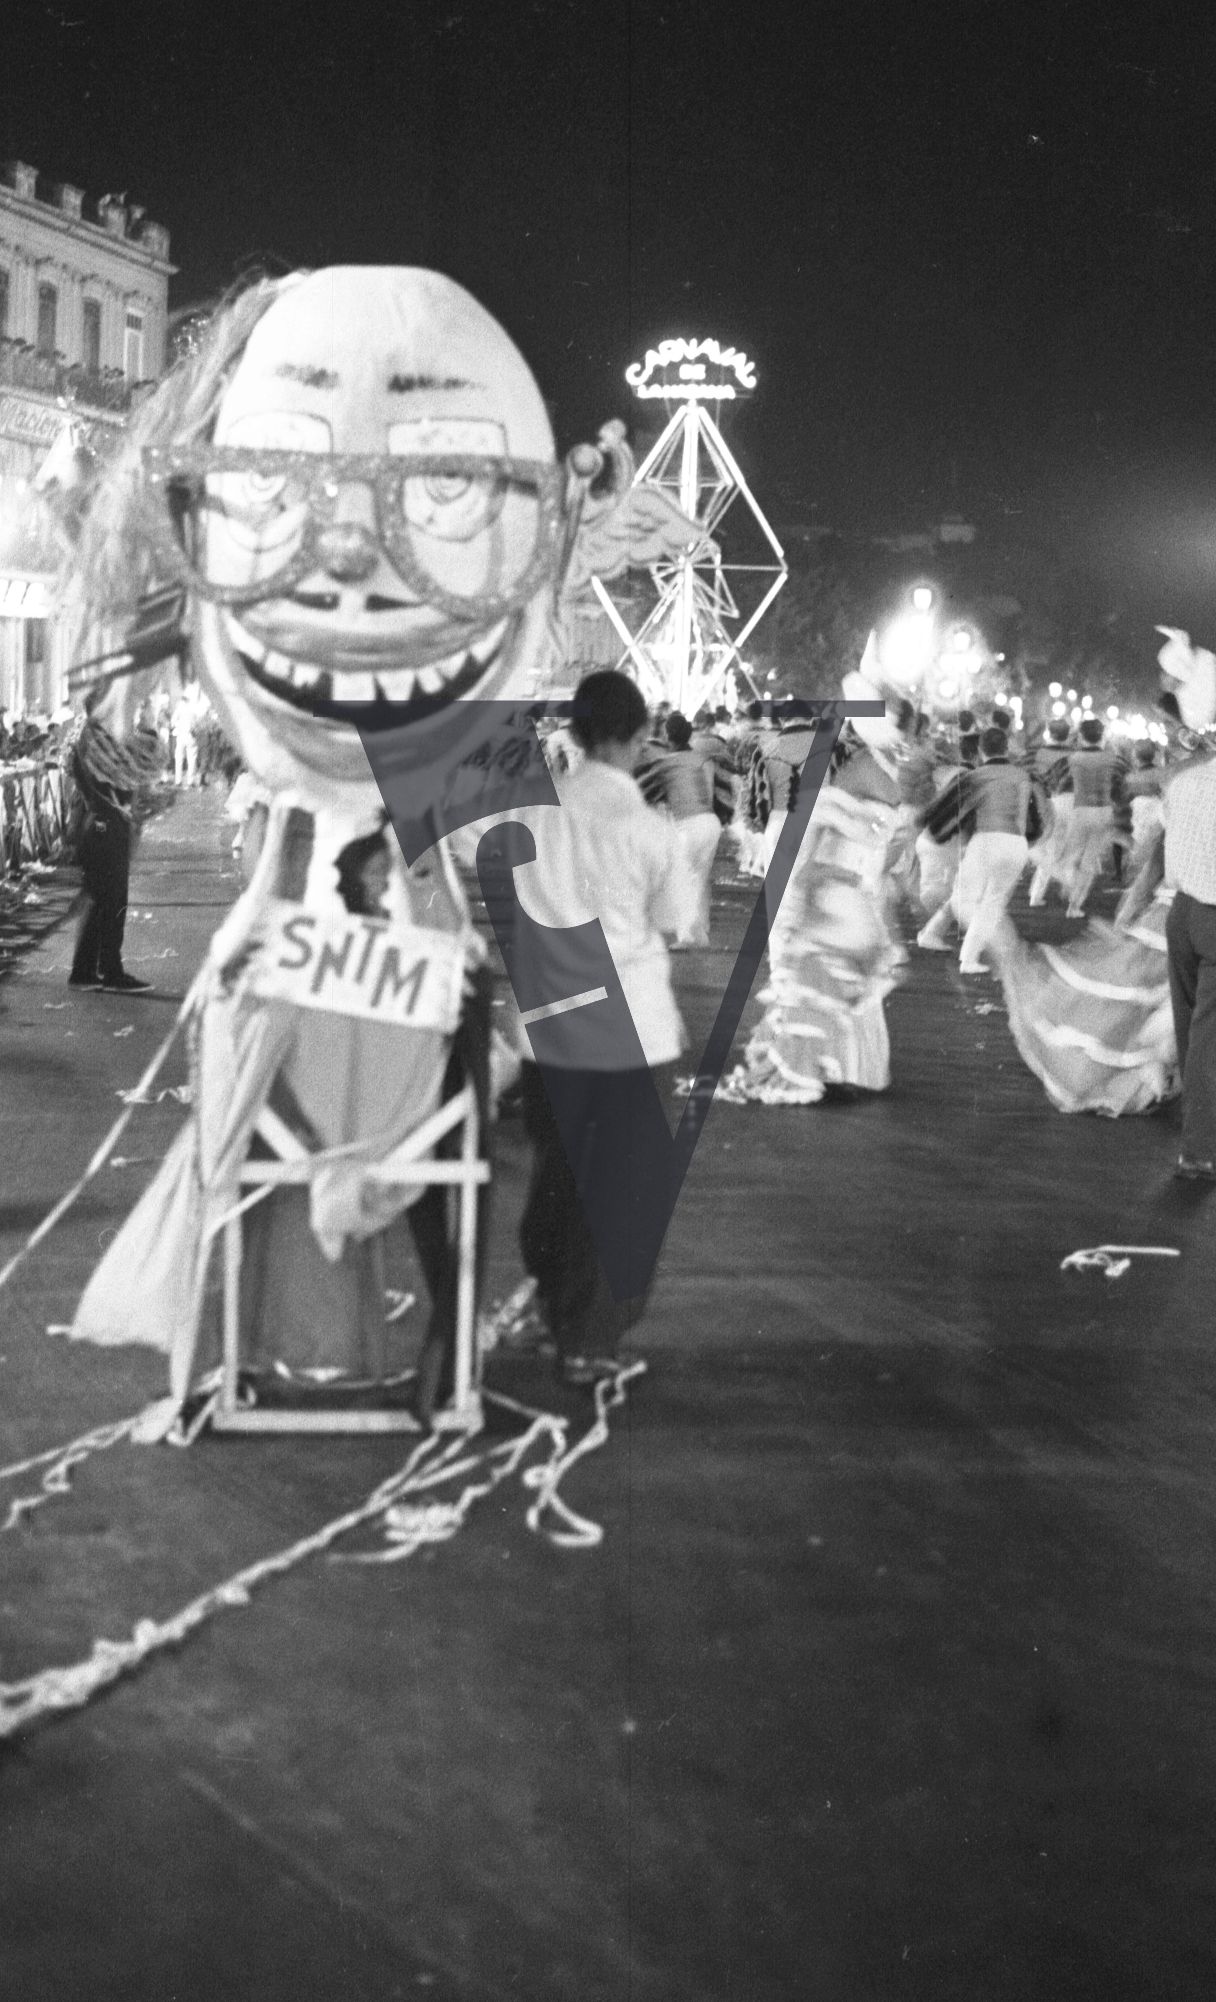 Cuba, Havana Carnival, SNTM float.